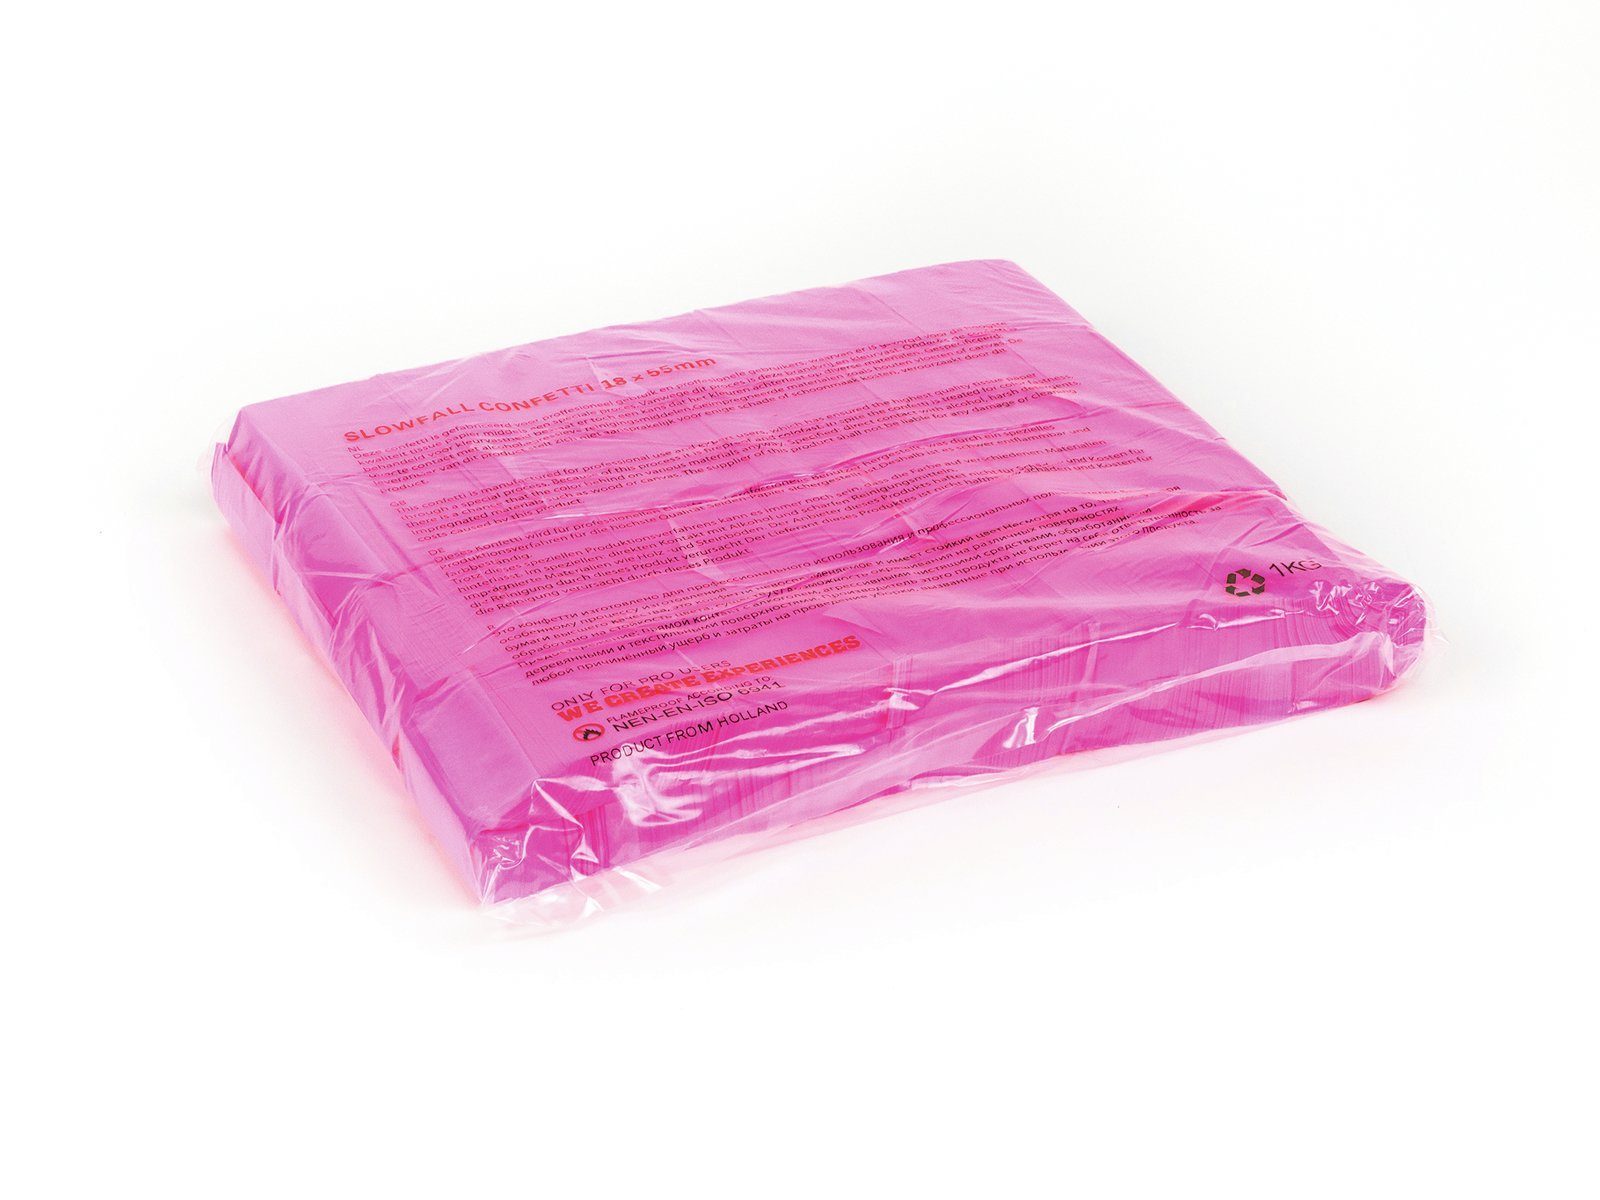 TCM Fx Konfetti Slowfall 55x18mm, rechteckig Konfetti pink erhältlich verschiedene 1kg, Farben neon, UV-aktiv